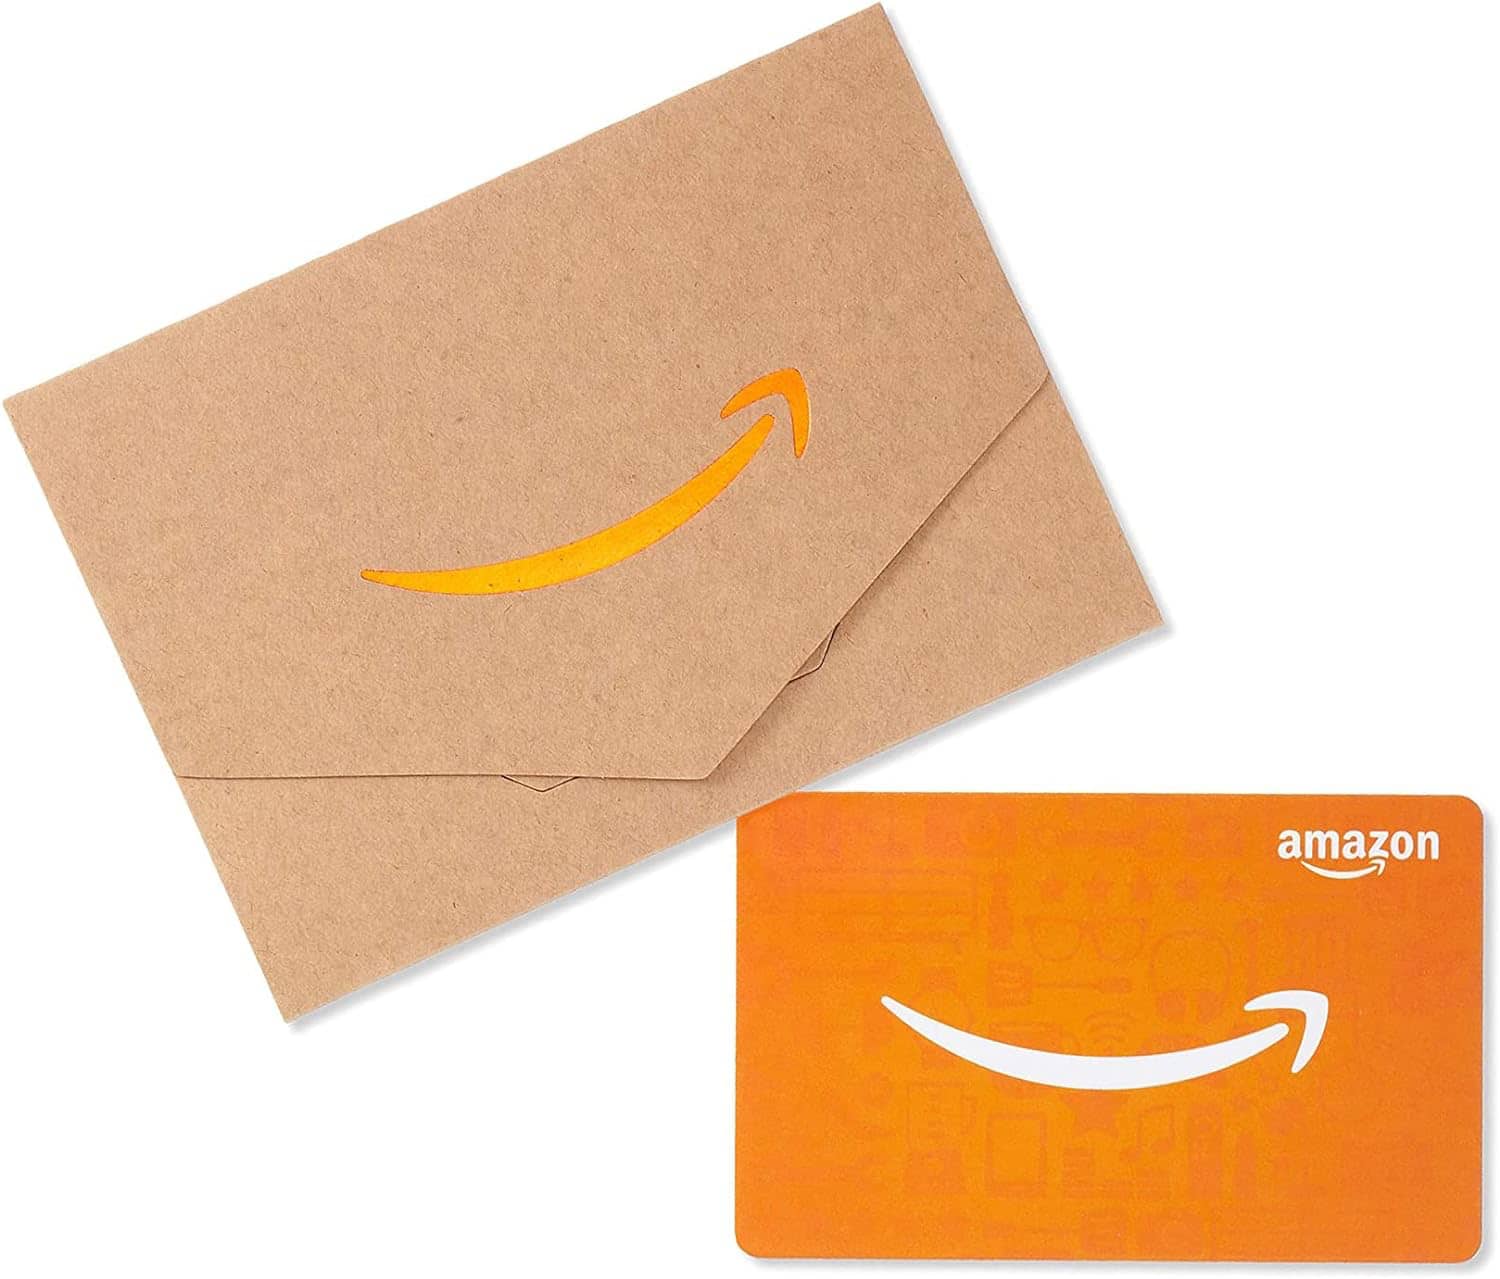 Amazonギフトカード(封筒タイプ)